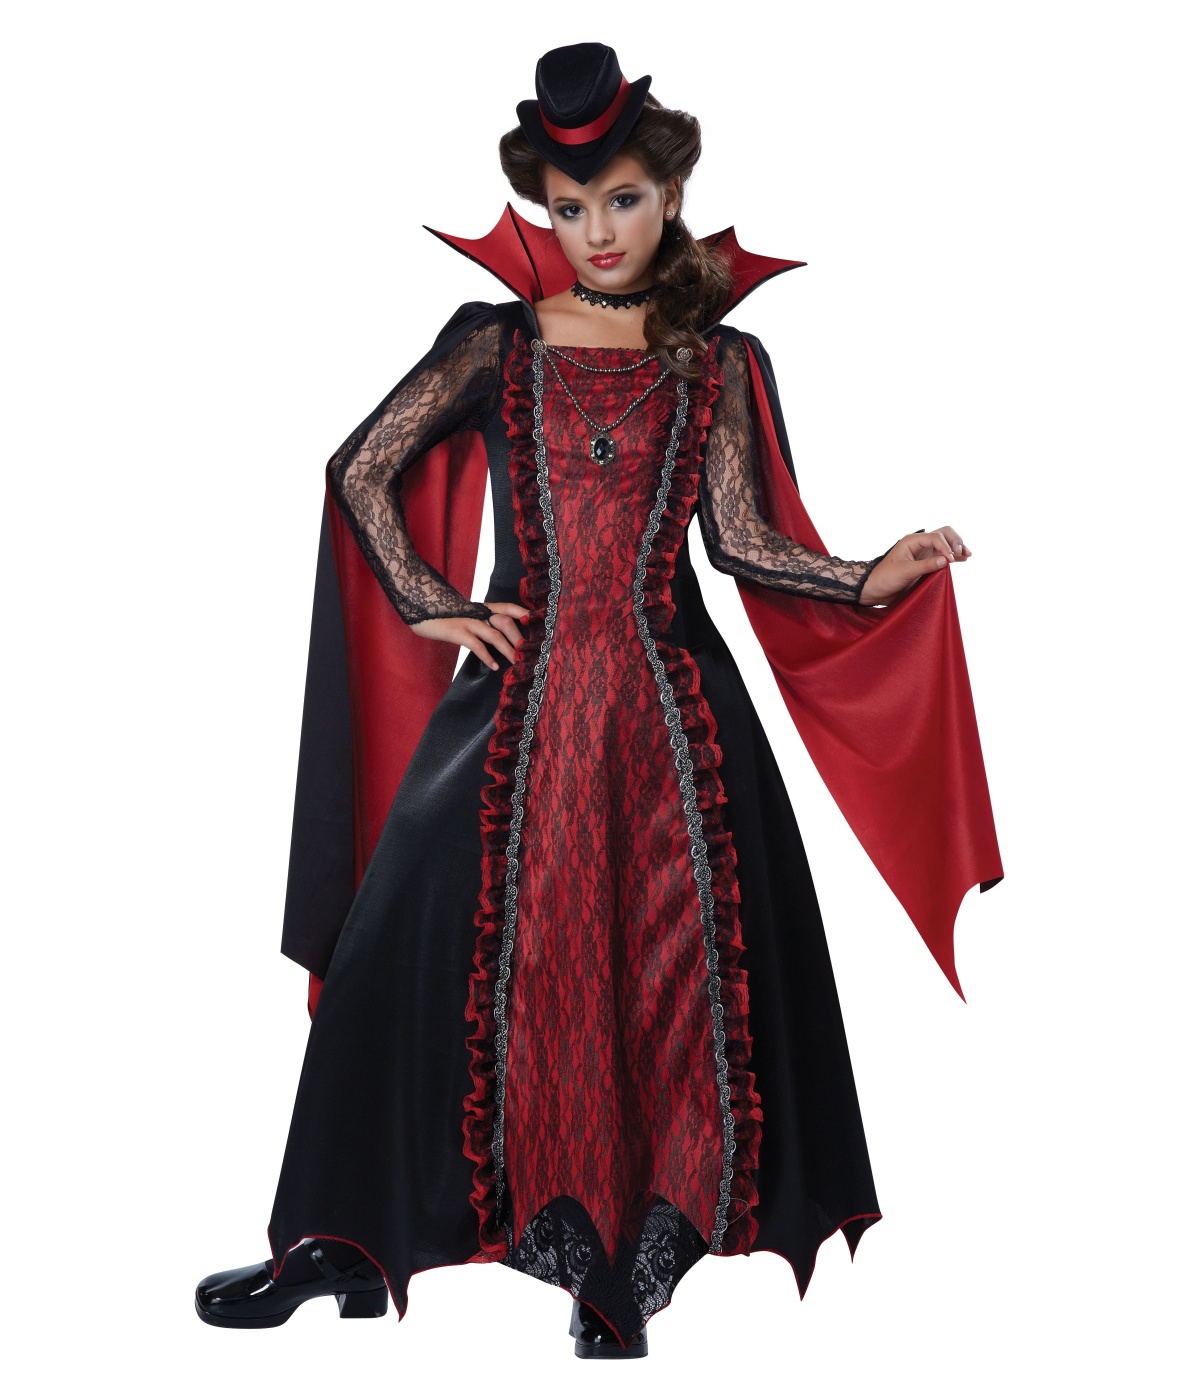  Girls Victorian Vampira Costume